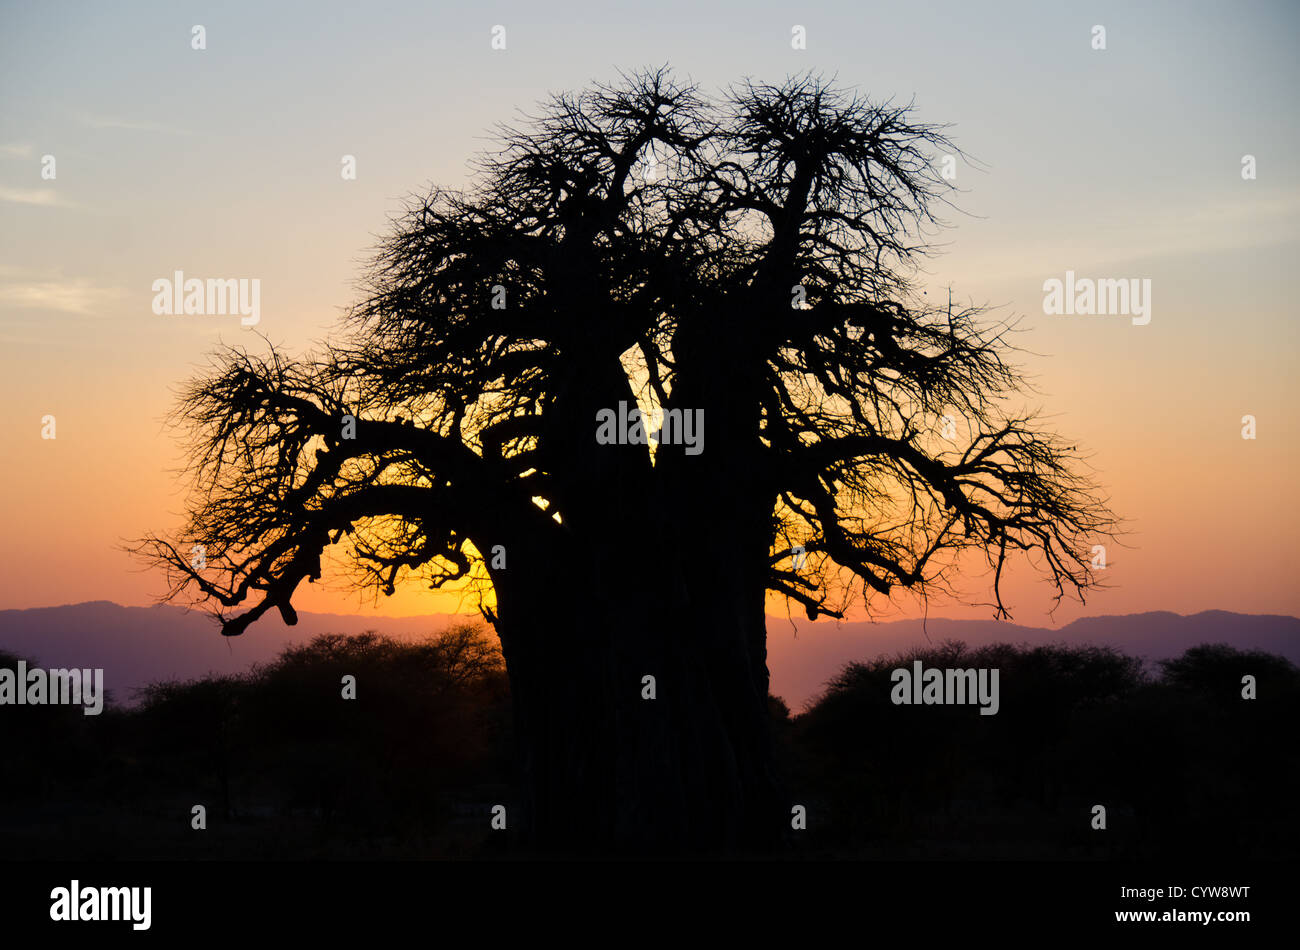 Der Tarangire National Park, Tansania - Die untergehende Sonne wirft ihre letzten Strahlen die Silhouette eines Baobab Baum in der Tarangire National Park im Norden von Tansania, nicht weit von den Ngorongoro Krater und die Serengeti. Stockfoto